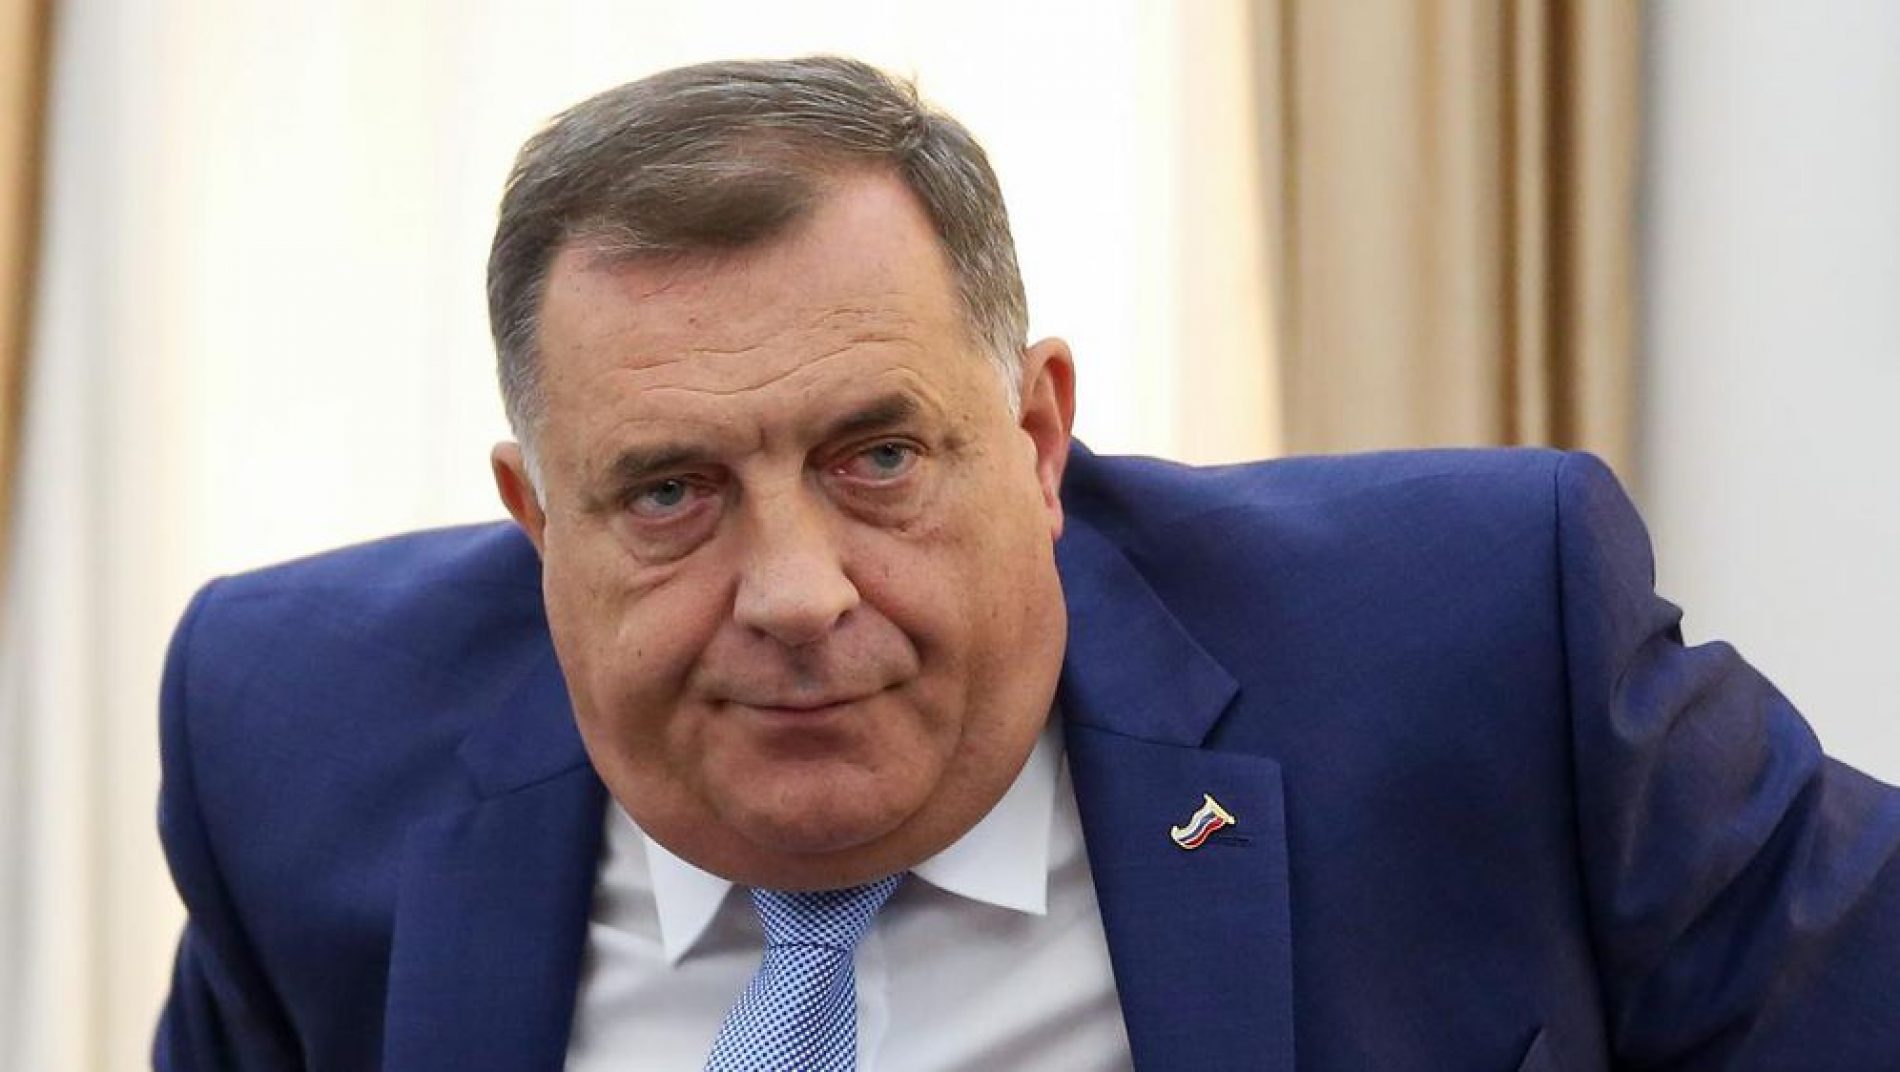  Povratnik u Zvorniku (pre)glasno rekao da je “Dodik debelo krme”, MUP Rs ga kaznio sa 100 KM!